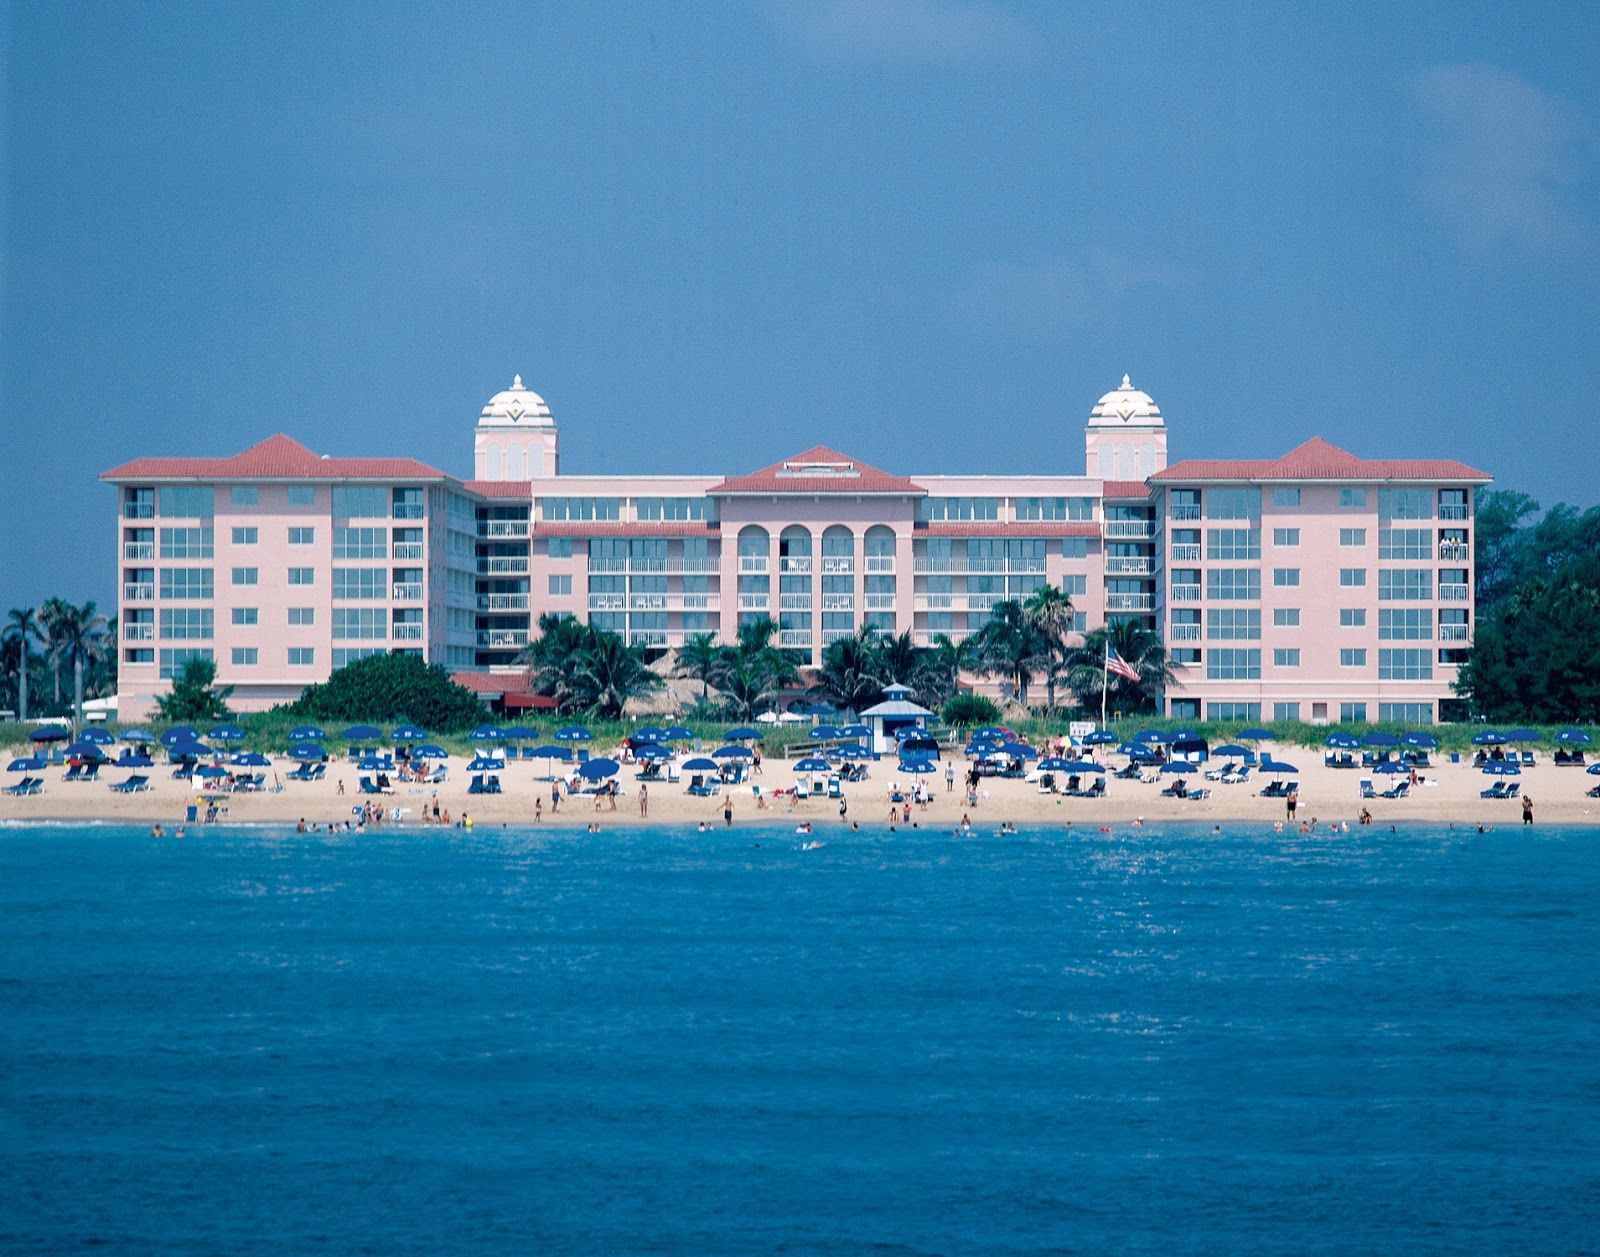 Foto af Riviera beach - populært sted blandt afslapningskendere